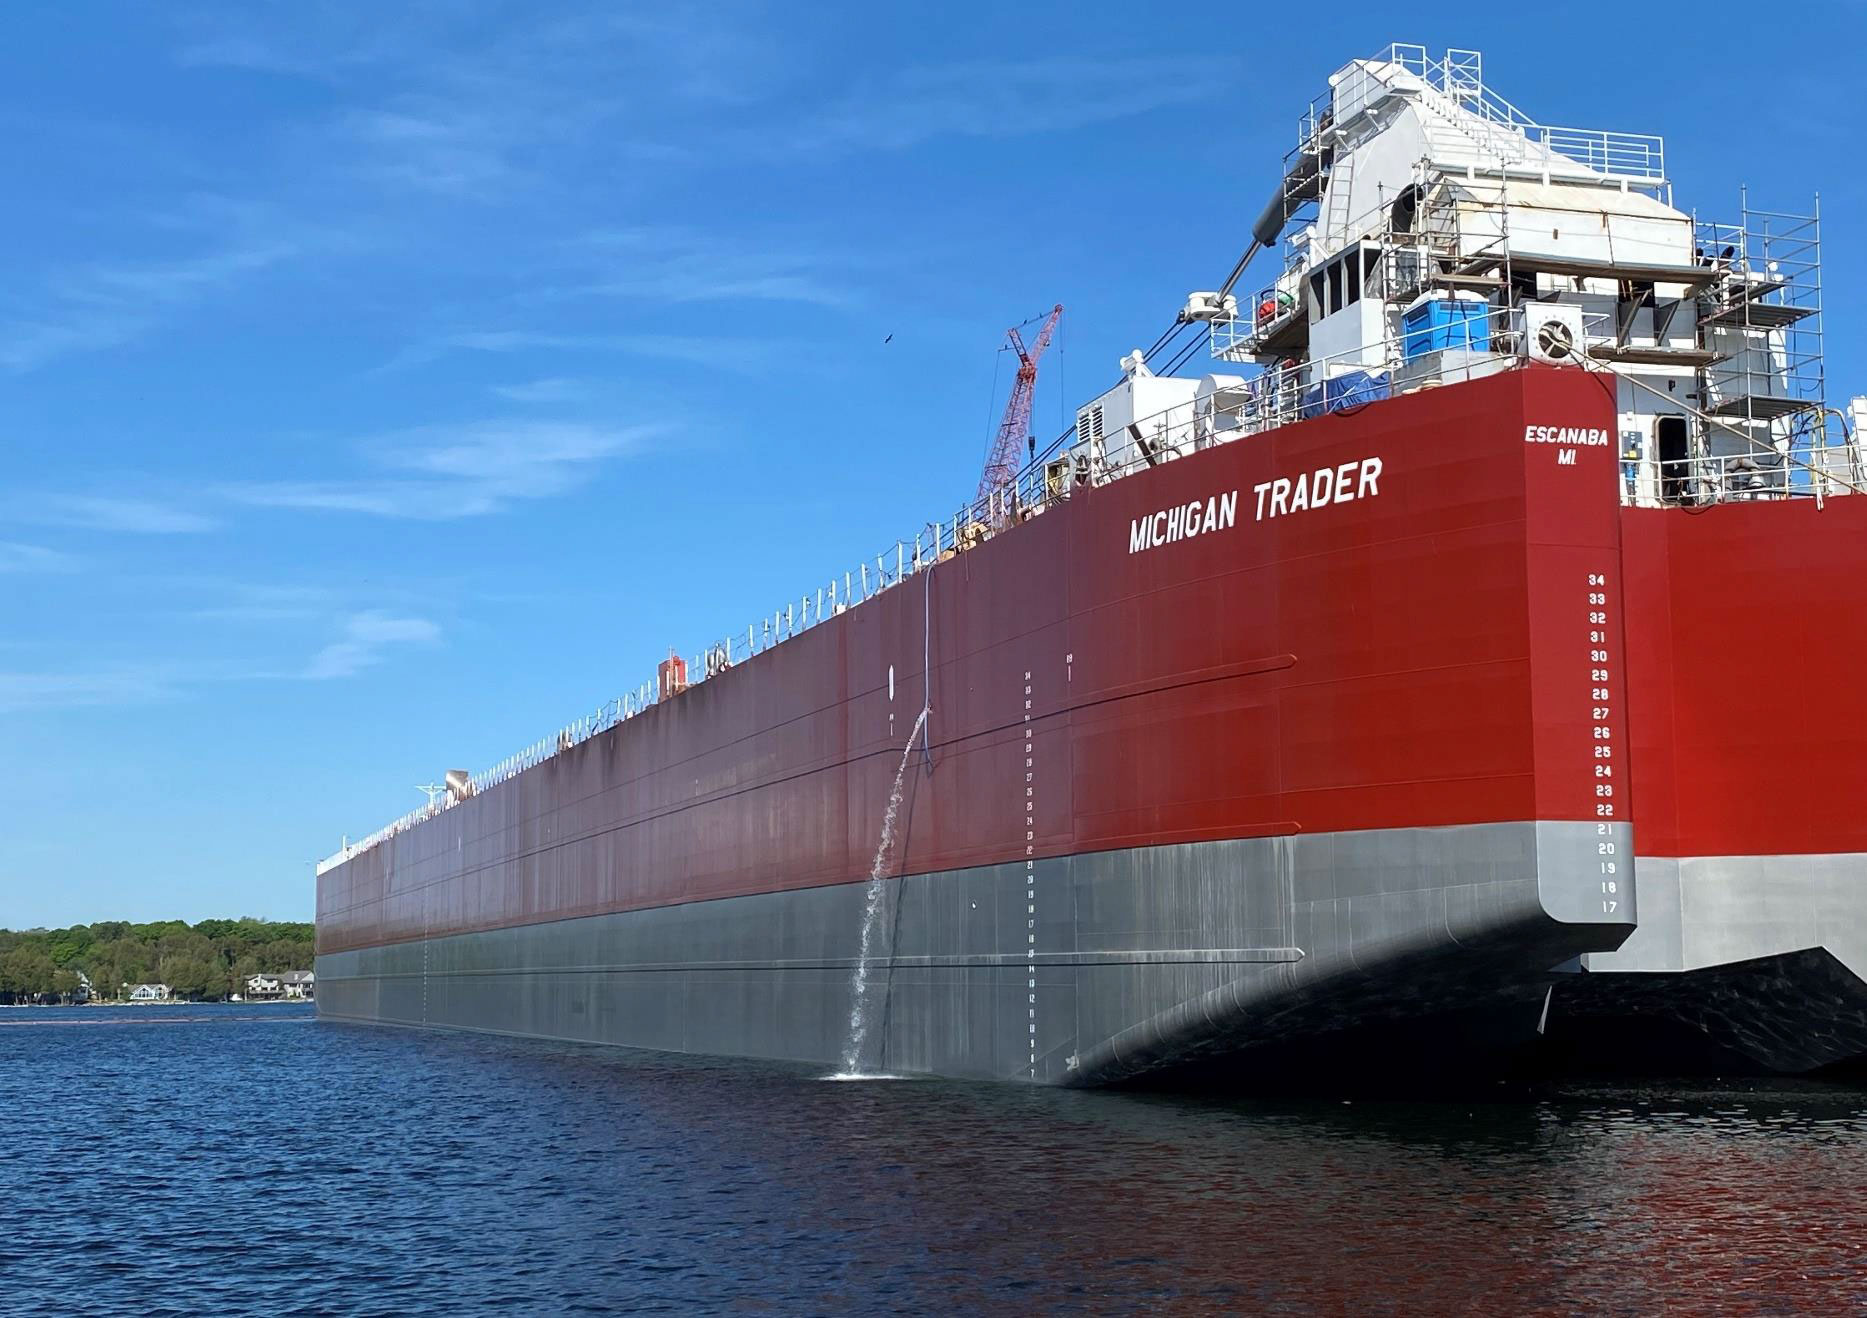 Fincantieri Bay Shipbuilding delivers new self-unloading barge to VanEnkevort Tug & Barge Inc.